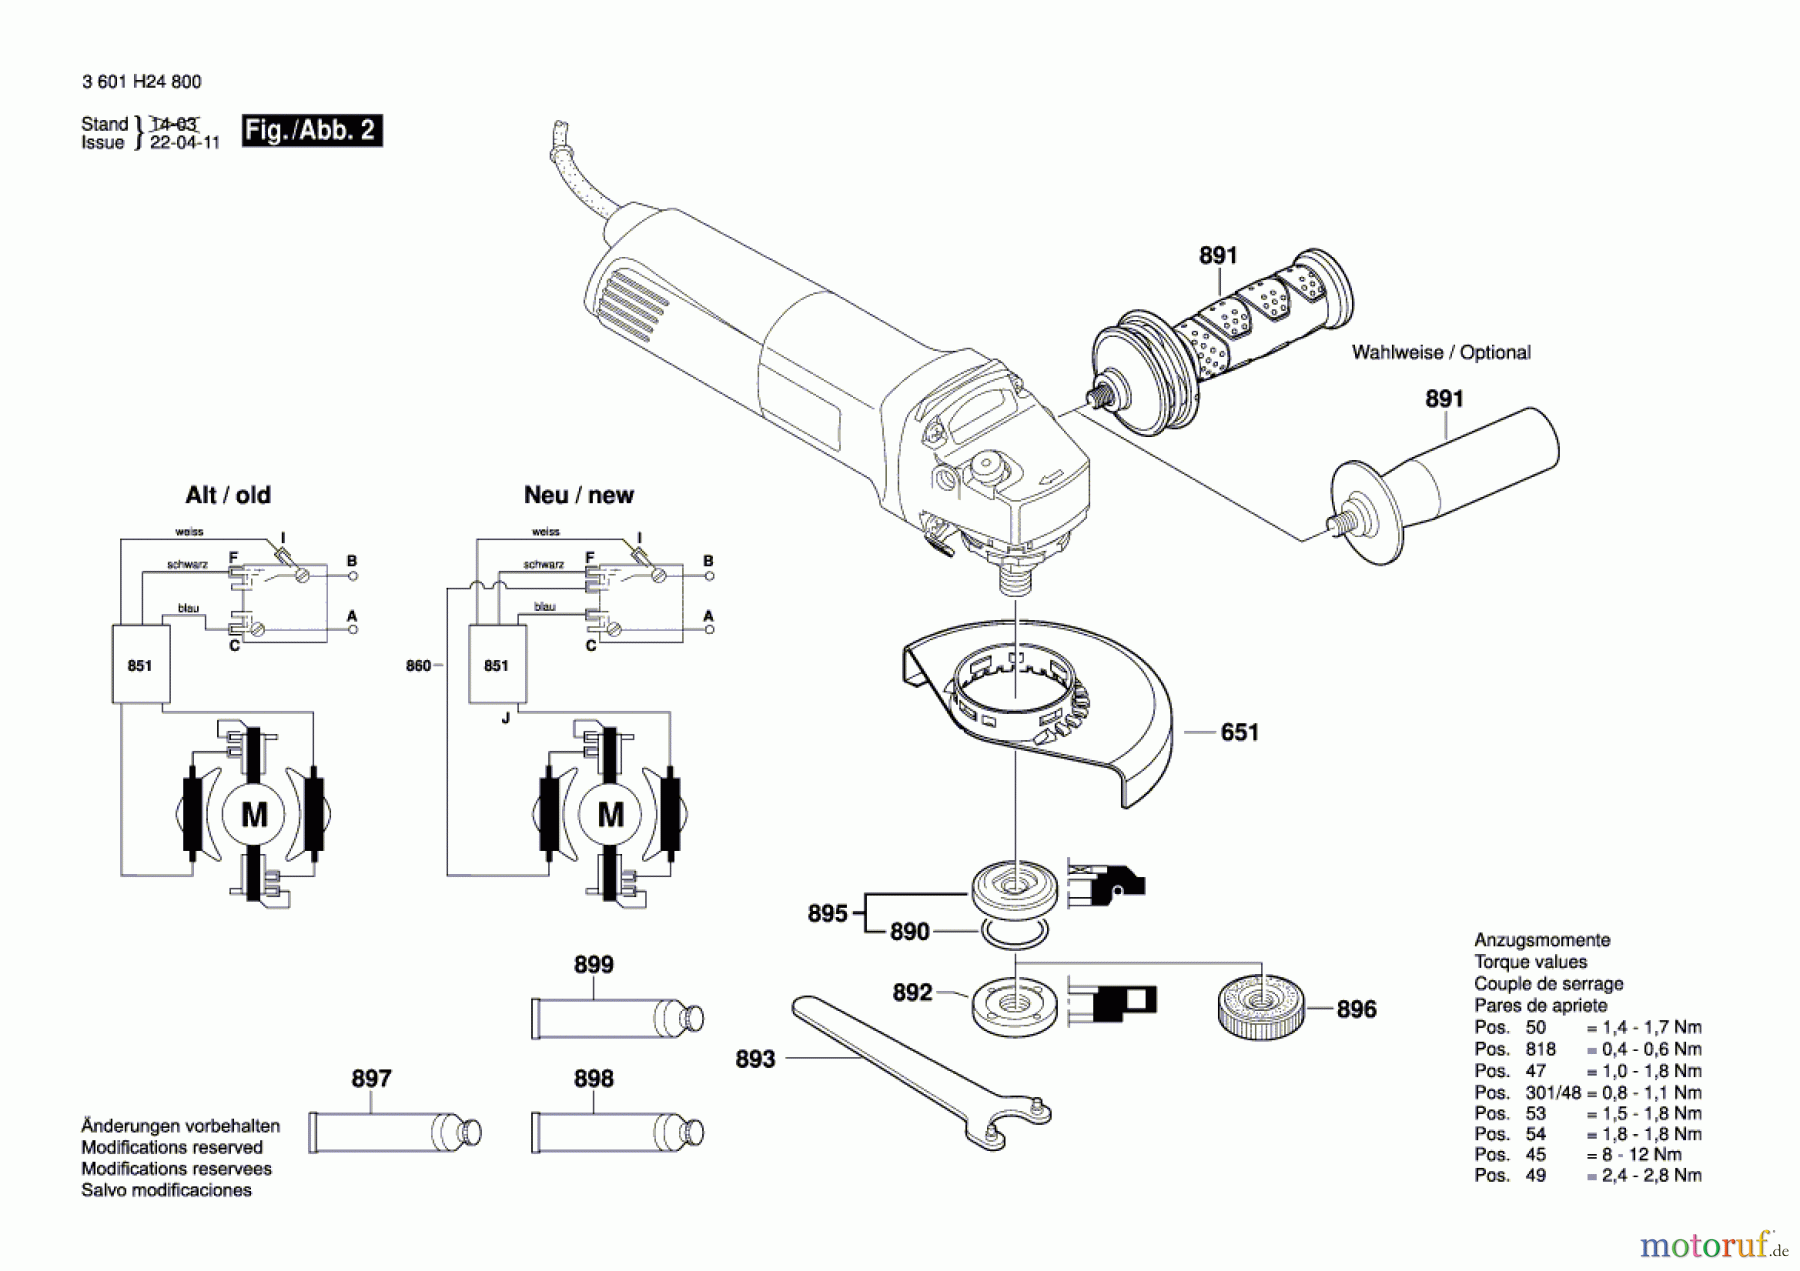  Bosch Werkzeug Winkelschleifer GWS 14-125 Seite 2